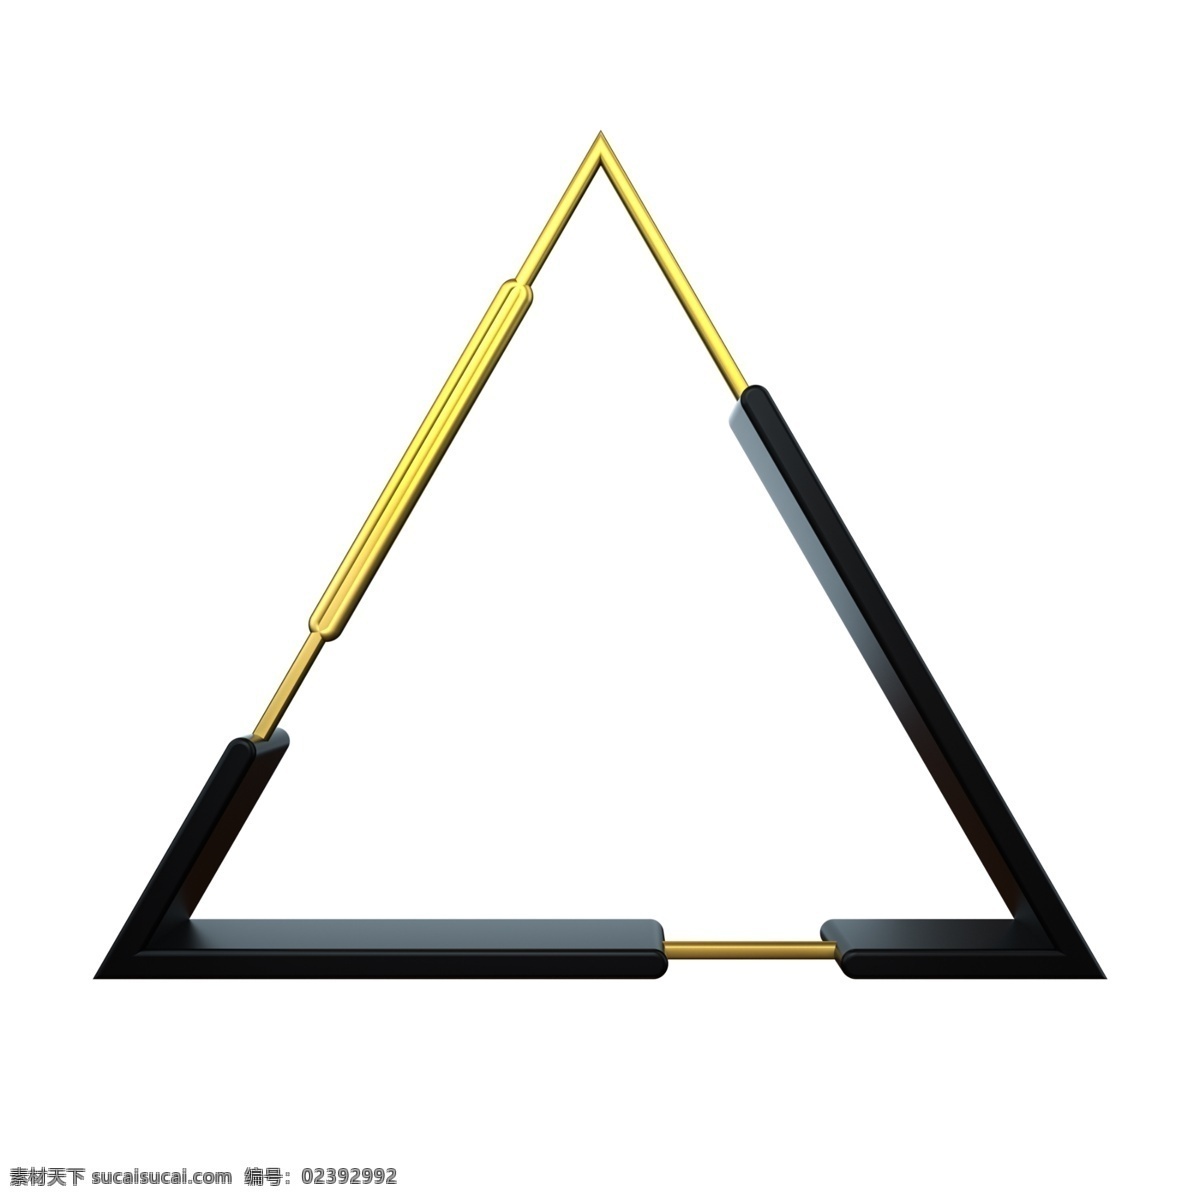 创意 三角形 金属 立体 边框 金属边框 立体边框 突出主题配饰 高级质感 平面海报装饰 黑金质感